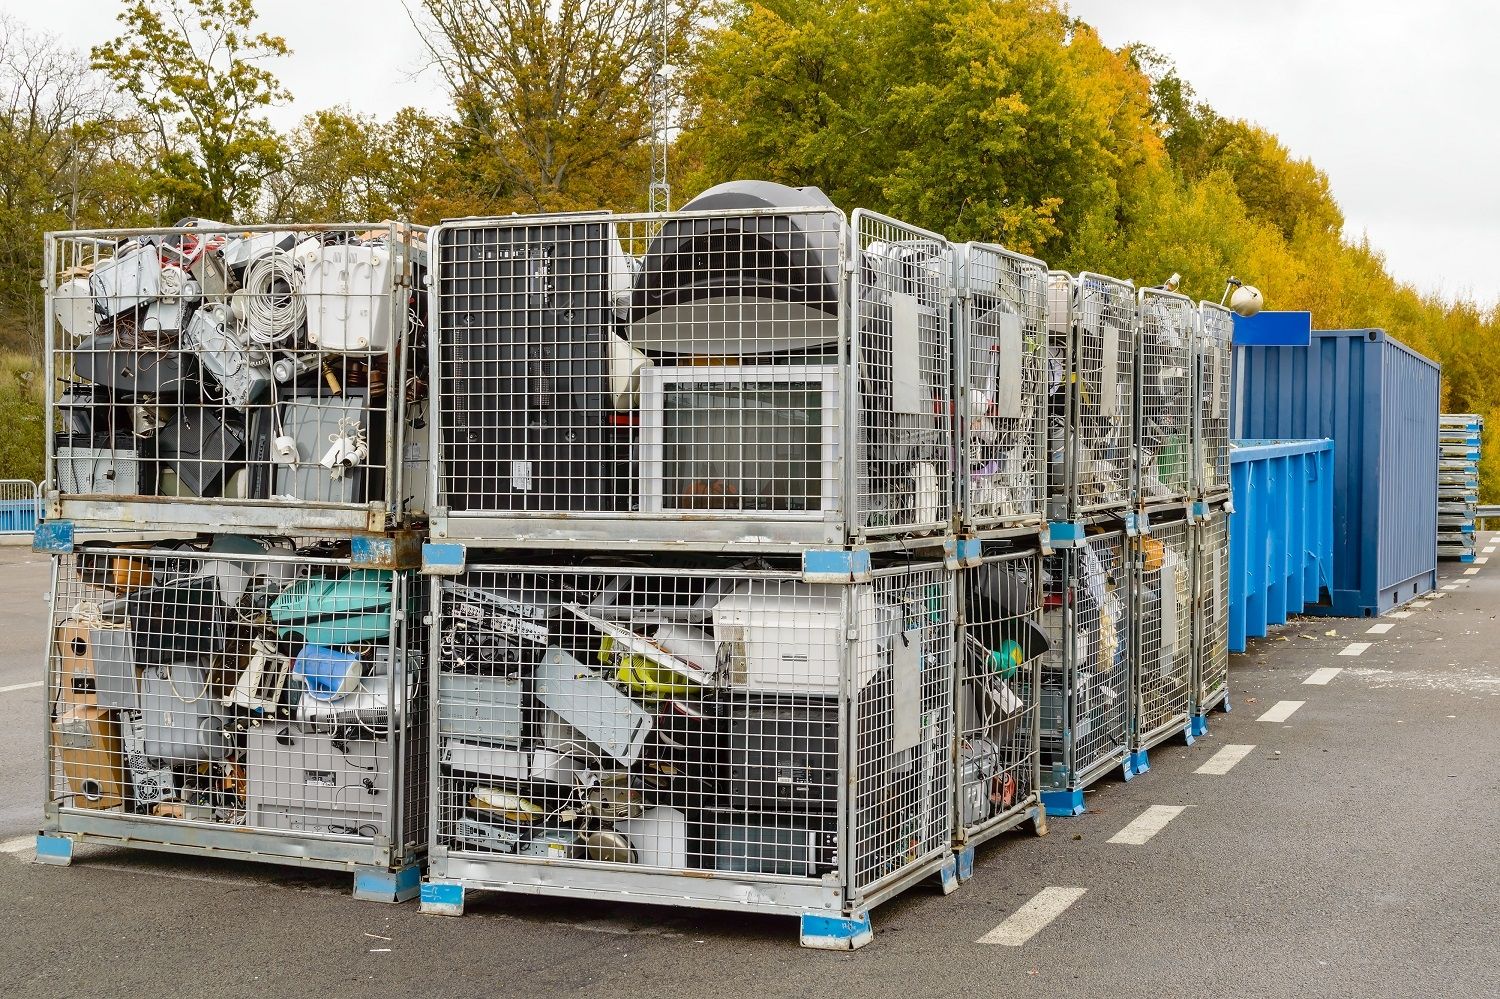 O lixo eletrônico, incluindo computadores, é descartado em lixeiras para reciclagem